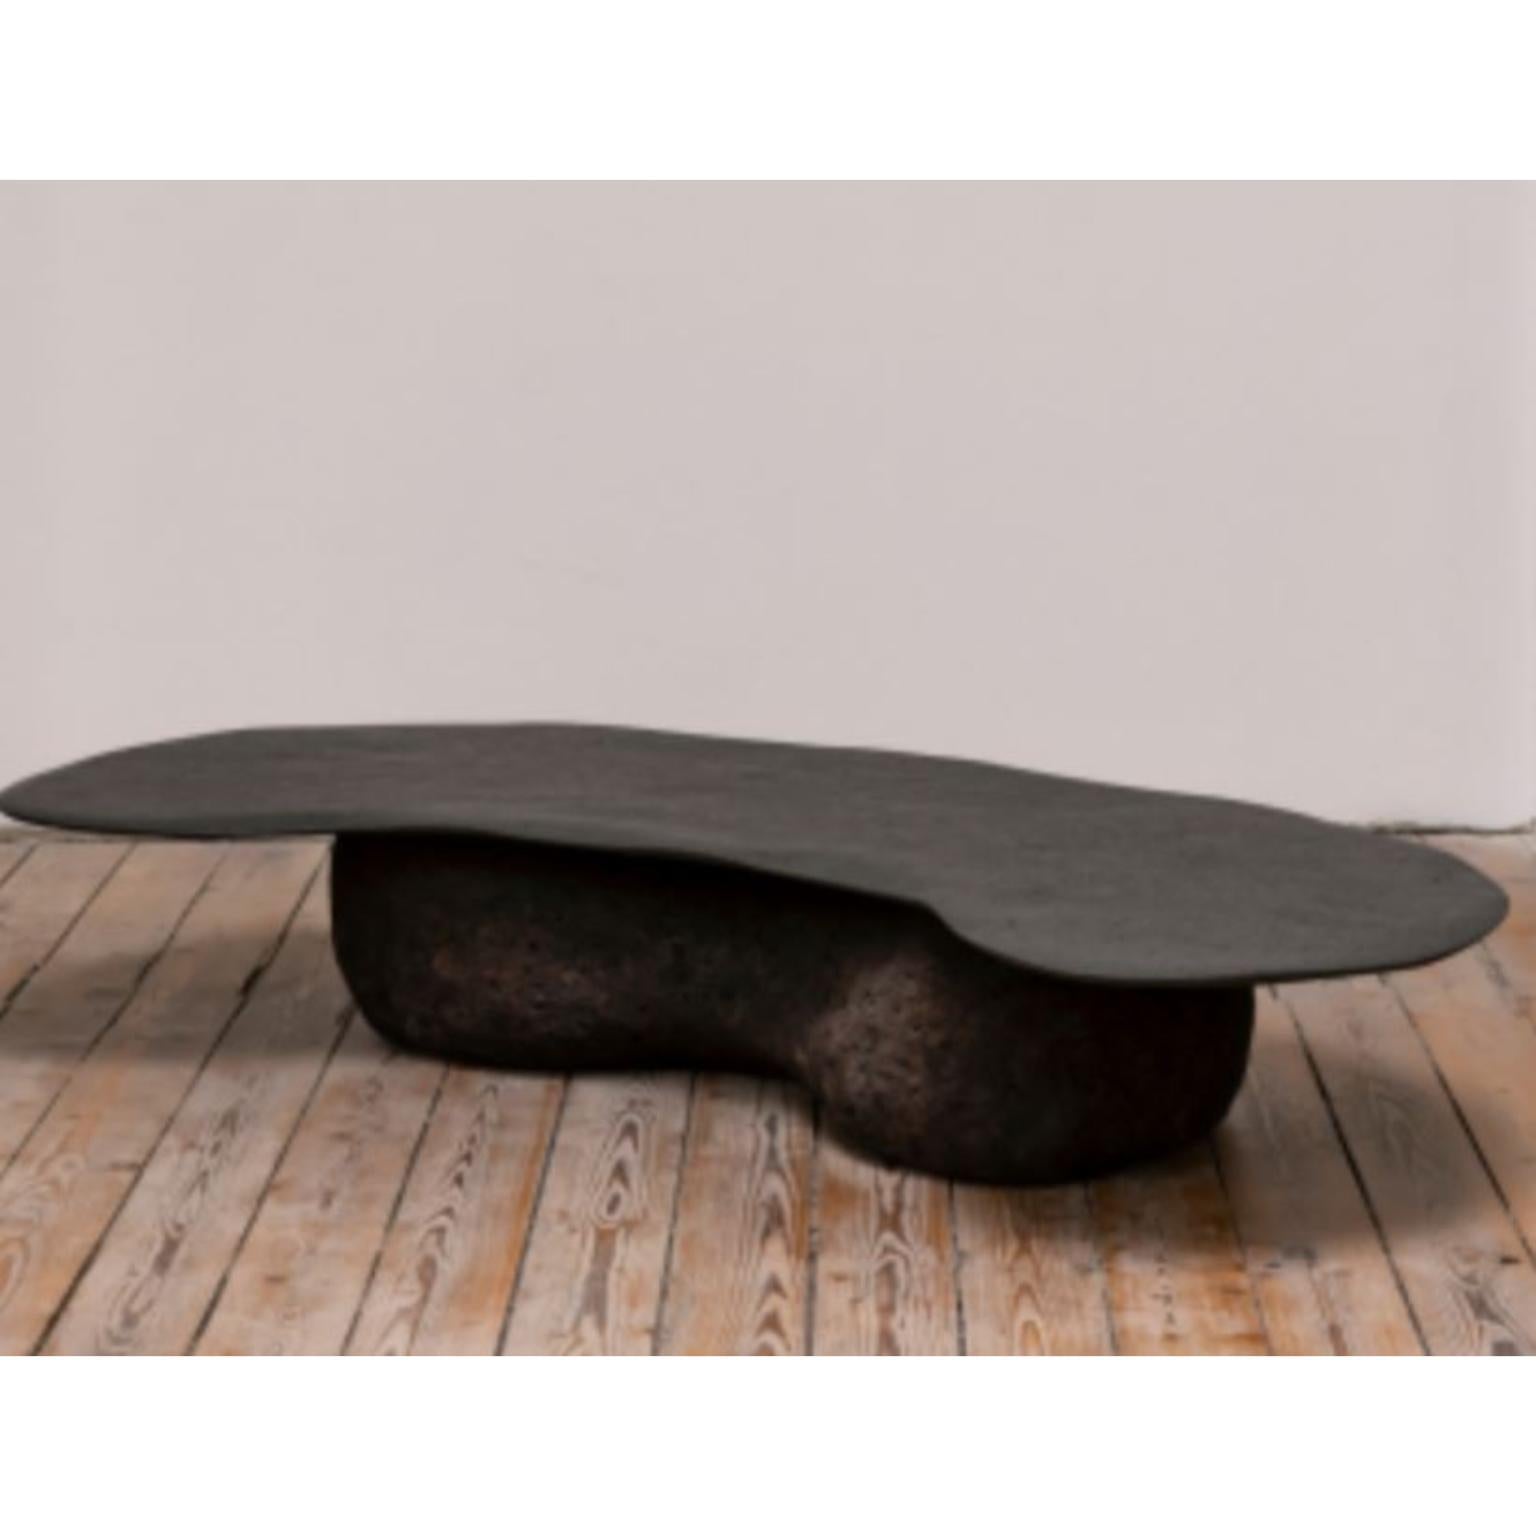 Table de salle à manger Black Rock de l'Atelier Benoit Viaene
Dimensions : D 76 x L 152 x H 35 cm.
MATERIAL : Bois, roche noire.

Benoit Viaene est originaire de Courtrai et vit et travaille à Gand.
Il est architecte diplômé de l'Institut Henry Van